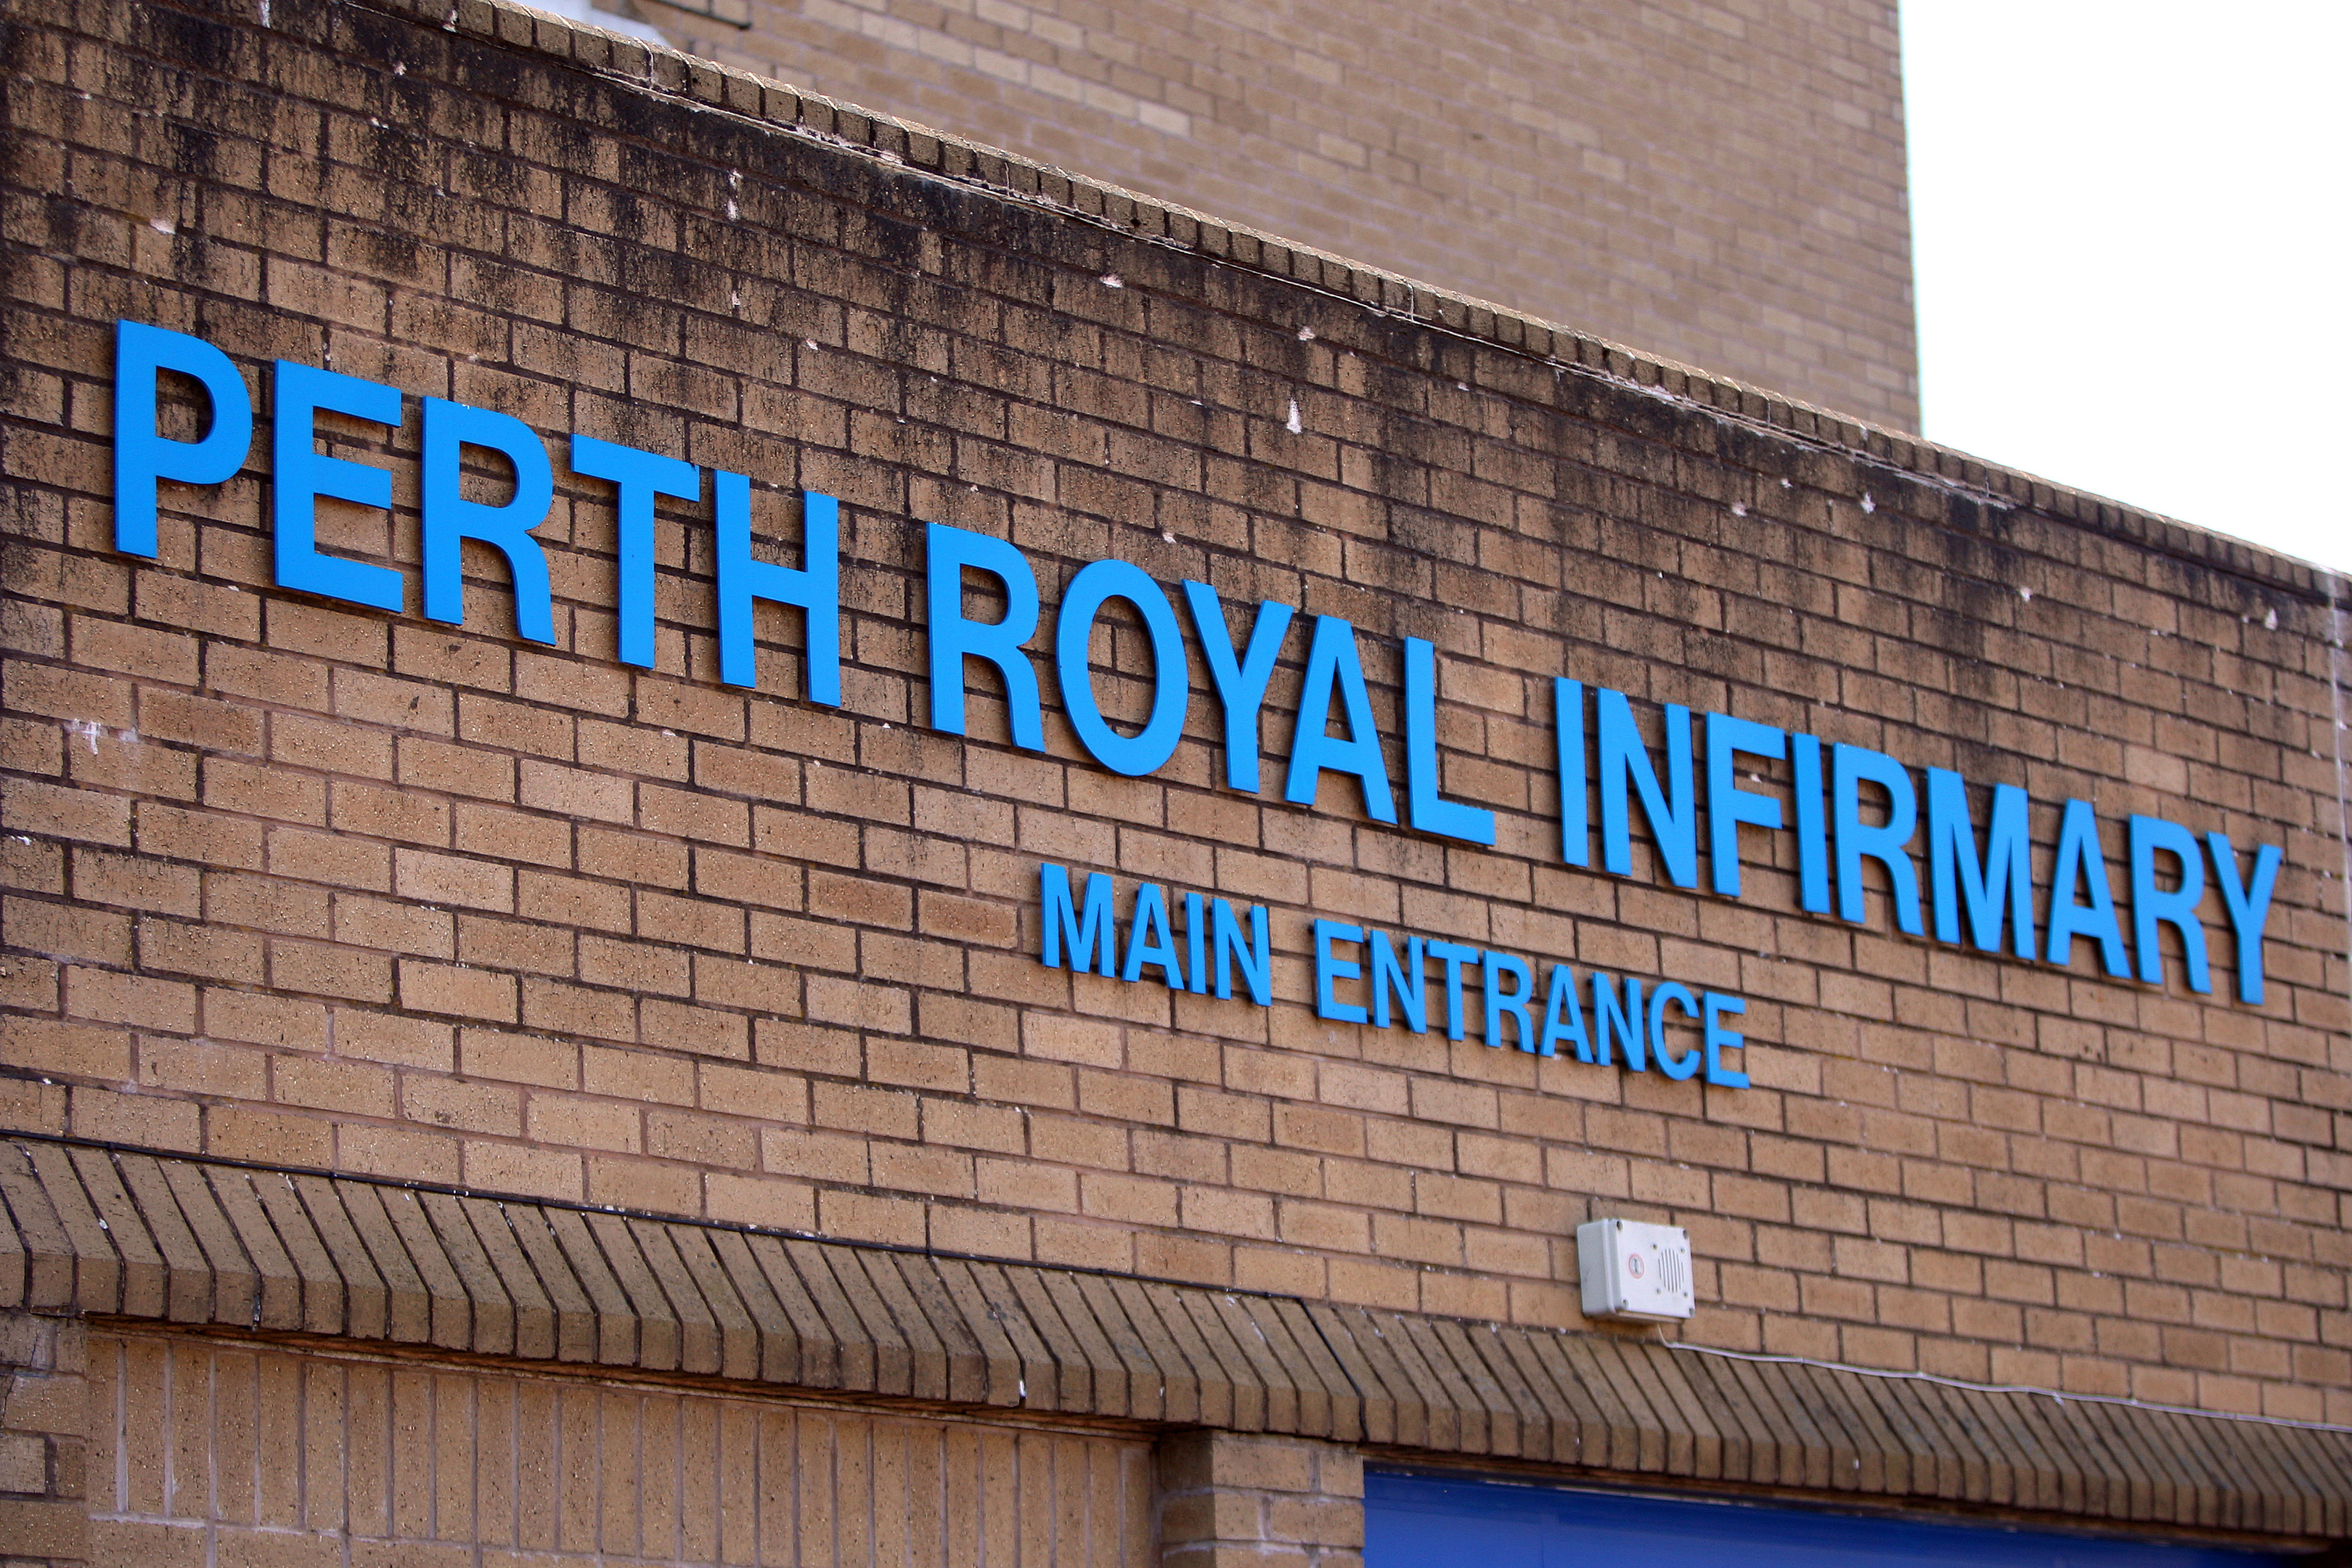 Perth Royal Infirmary.